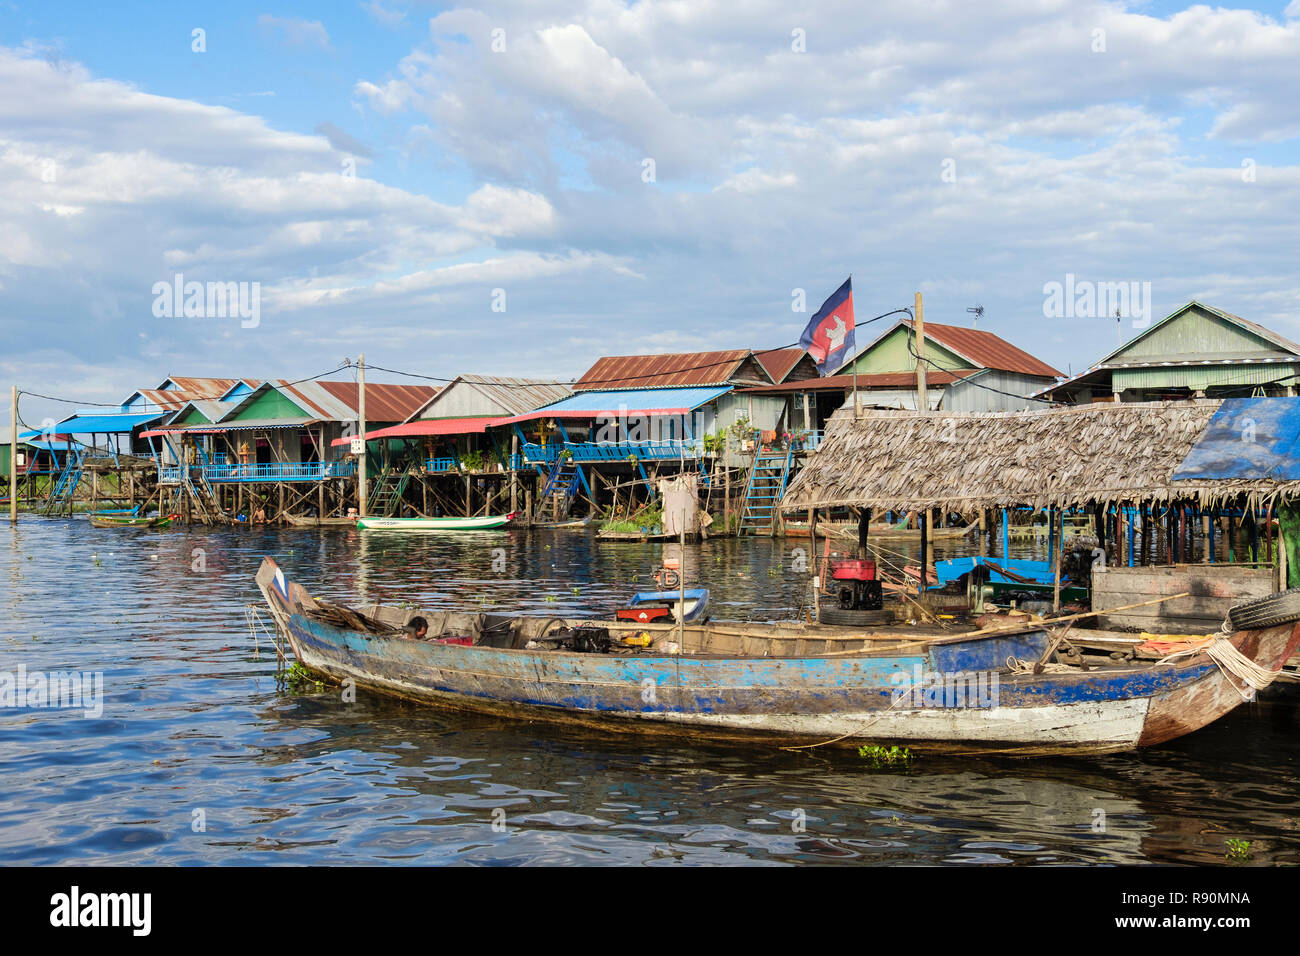 Alte Holz- Boot und traditionelle Häuser auf Stelzen in schwimmenden Fischerdorf in den Tonle Sap See. Kampong Phluk, Provinz Siem Reap, Kambodscha, Asien Stockfoto